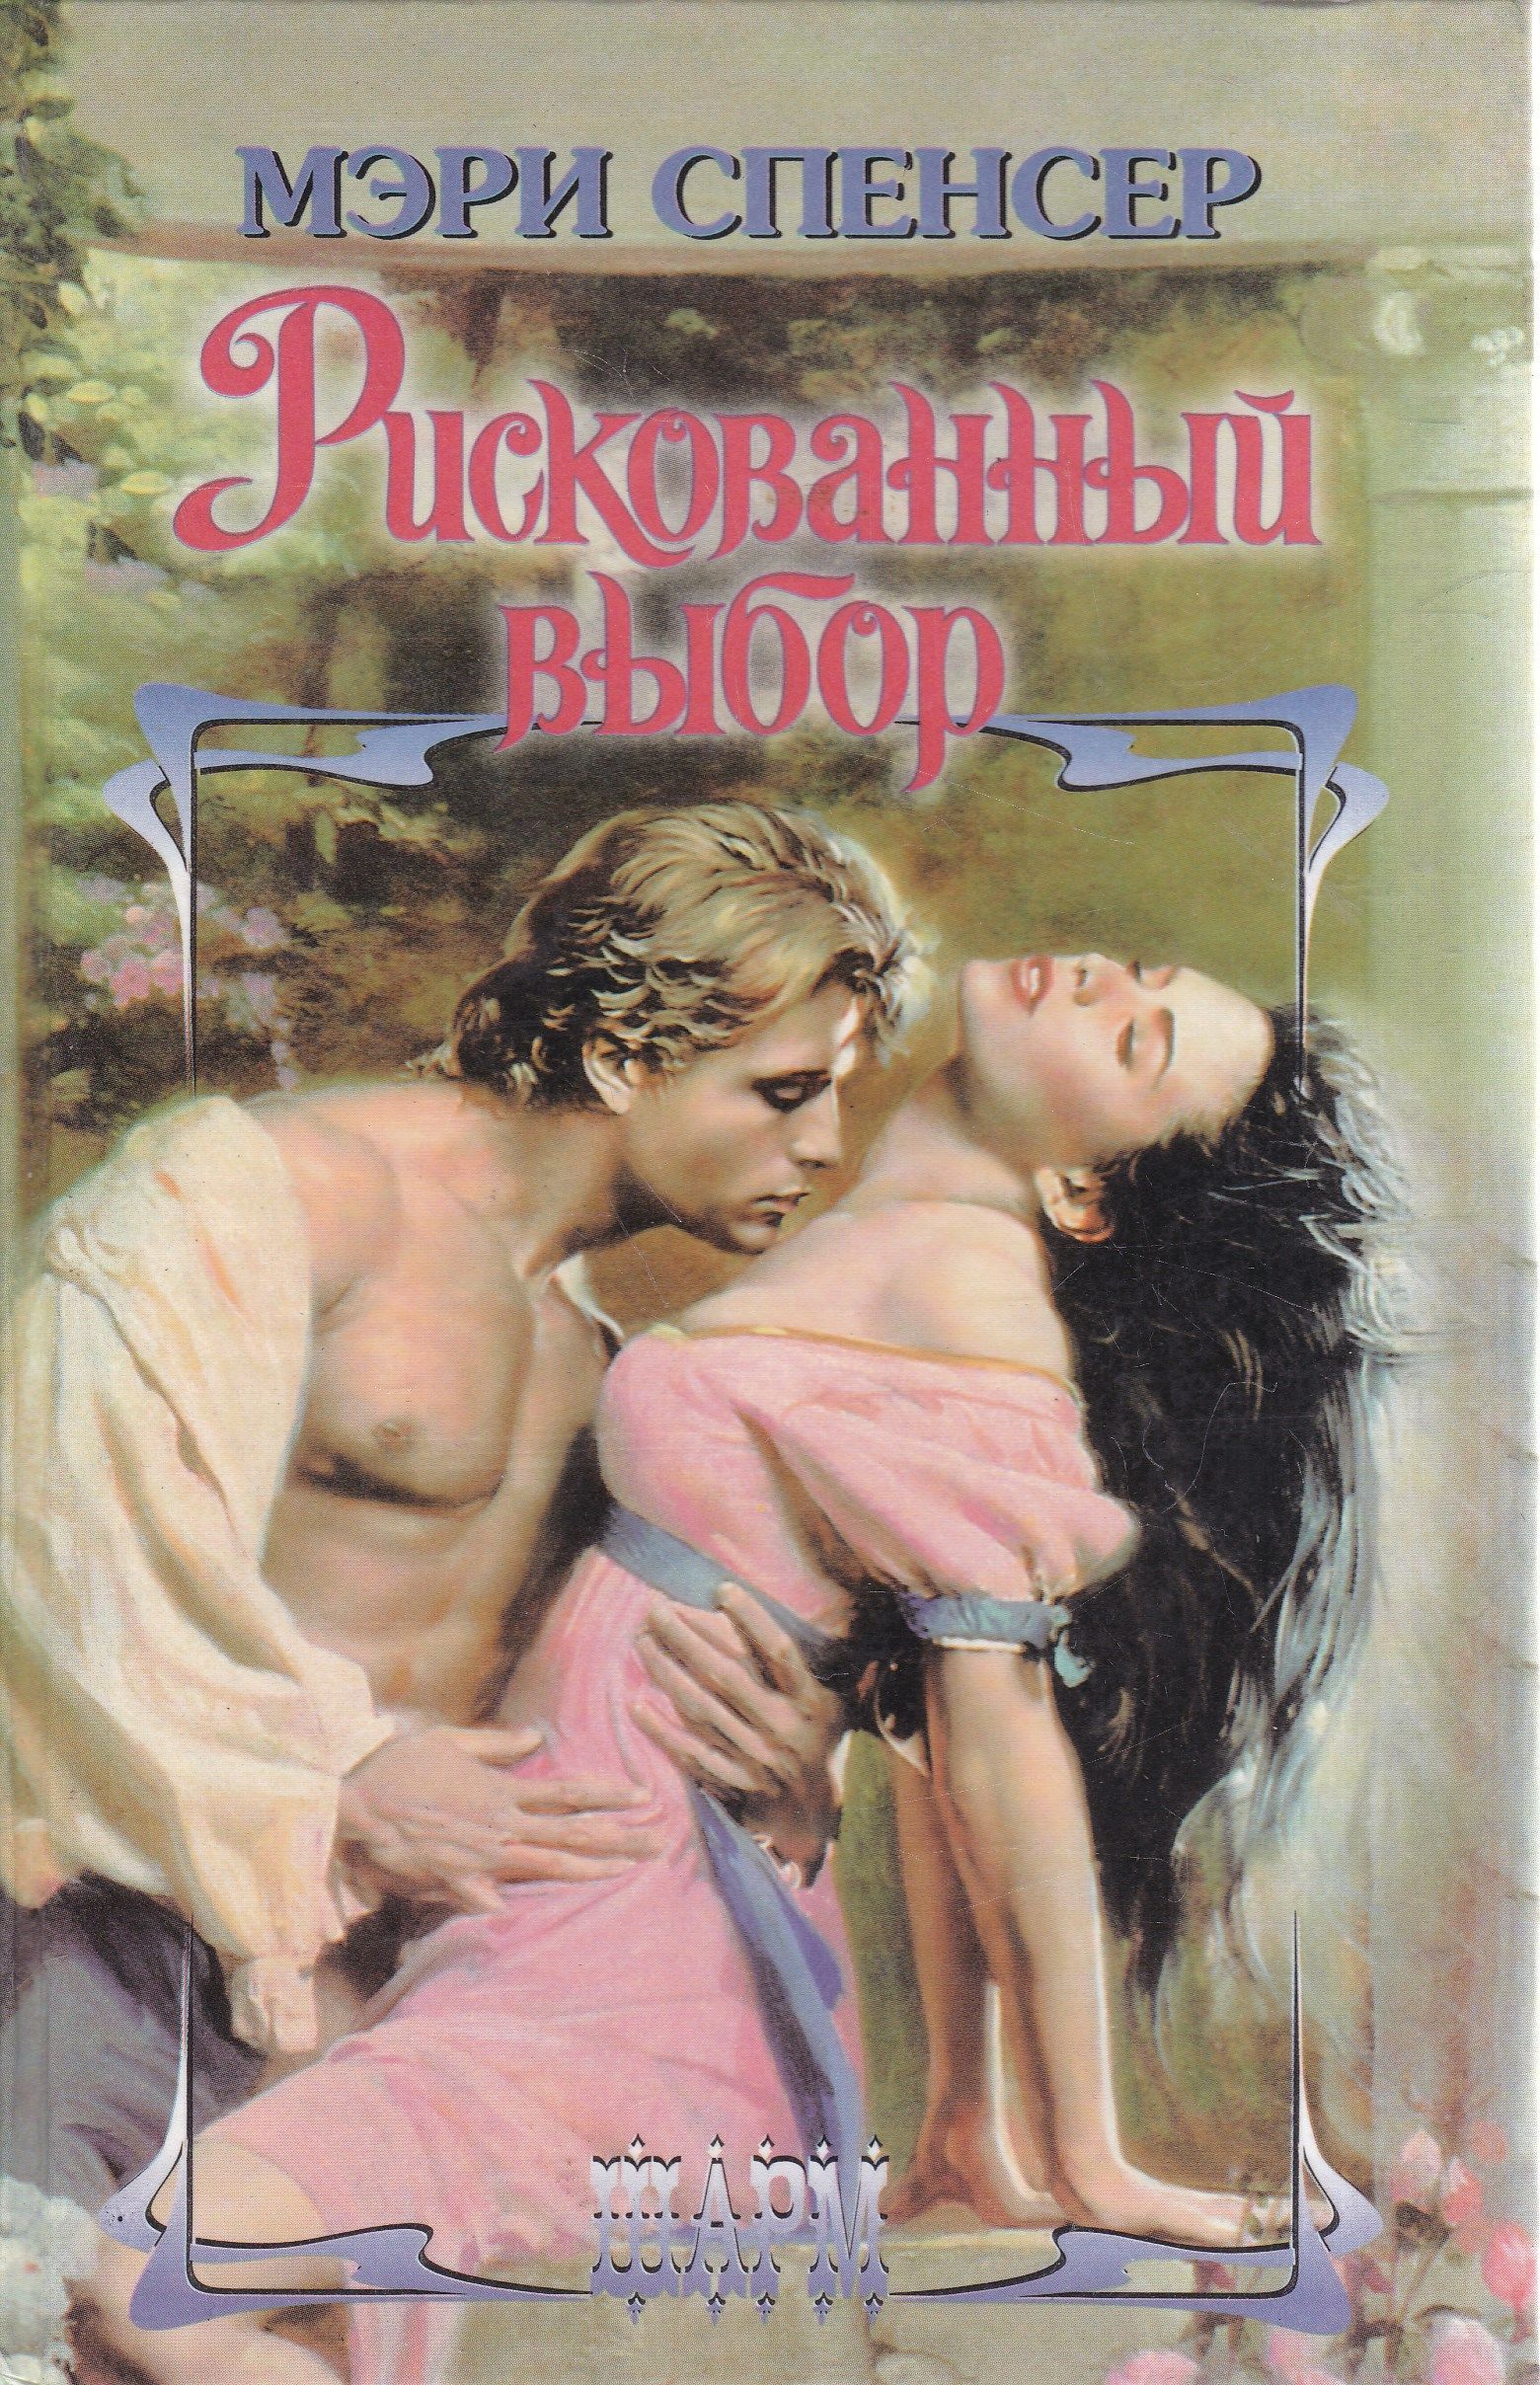 любовно исторические романы с элементами эротики фото 108